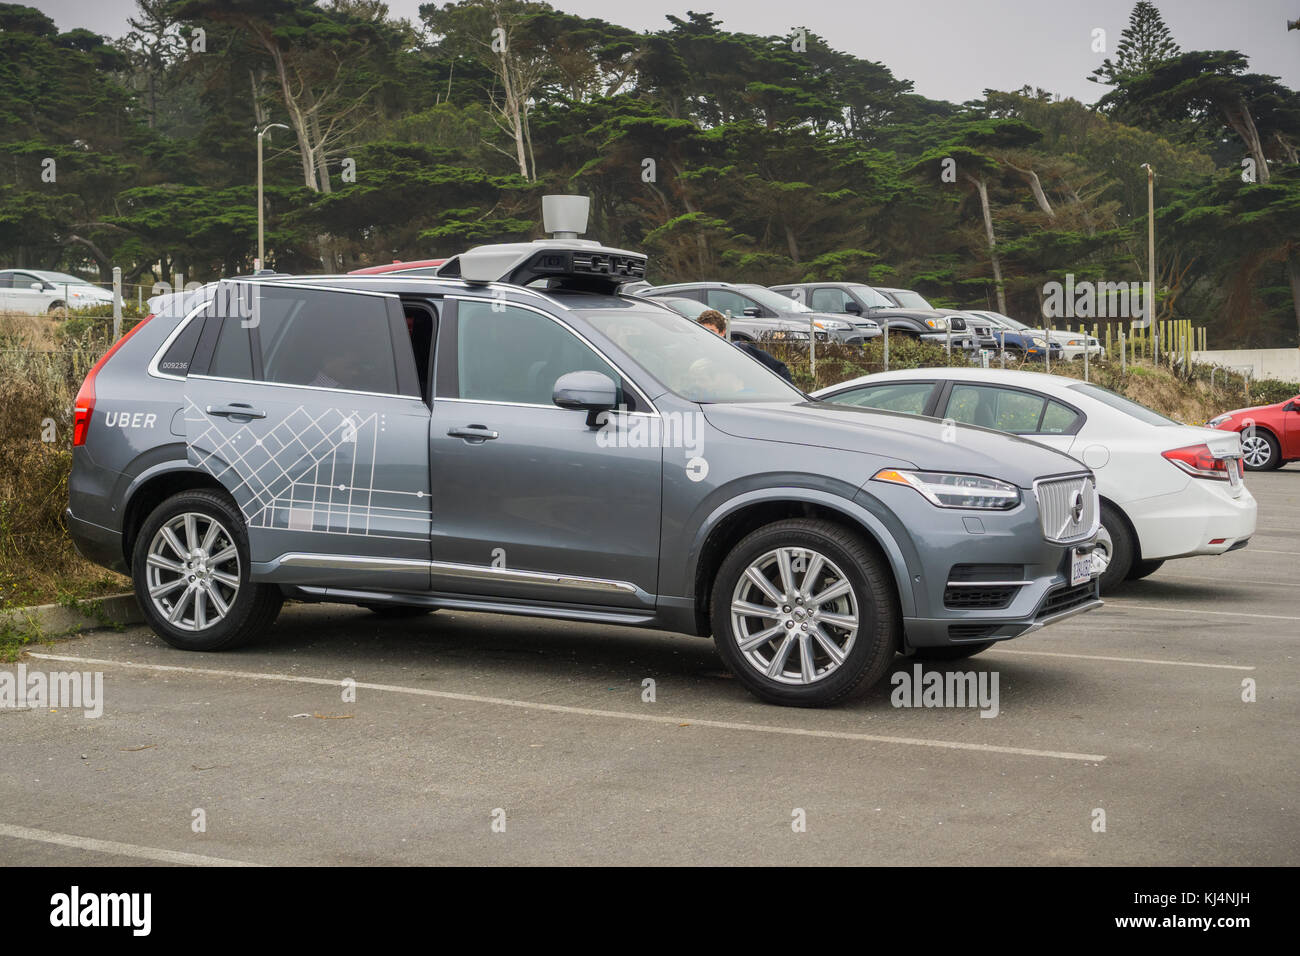 August 10, 2017, San Francisco/CA/USA - Uber selbst - die Autos fahren dürfen, um Tests in San Francisco laufen ab März Stockfoto